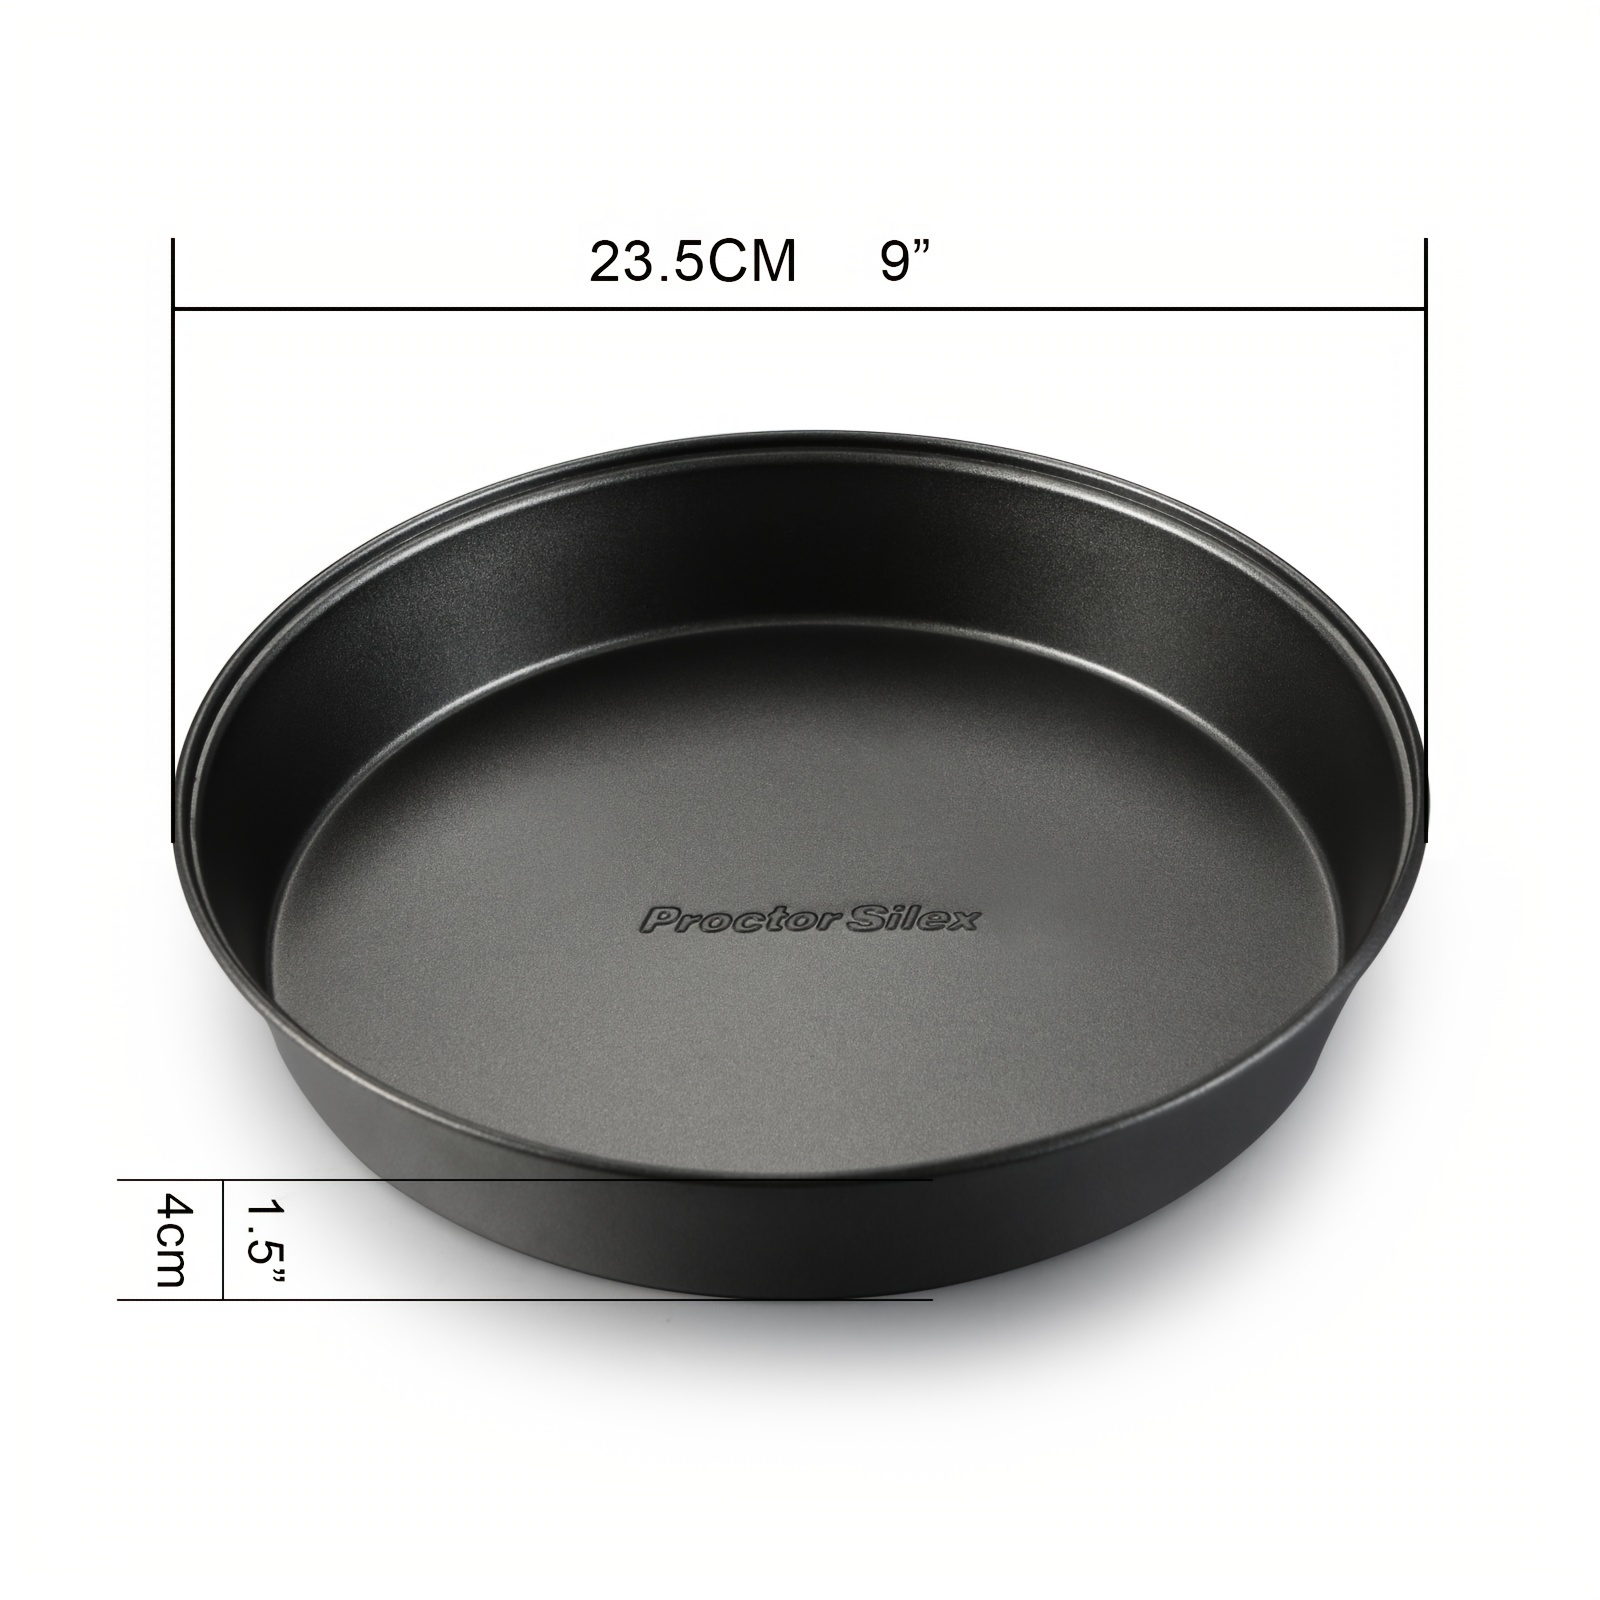 Basics Nonstick Carbon Steel Round Baking Cake Pan, 9 inch, Set of 2